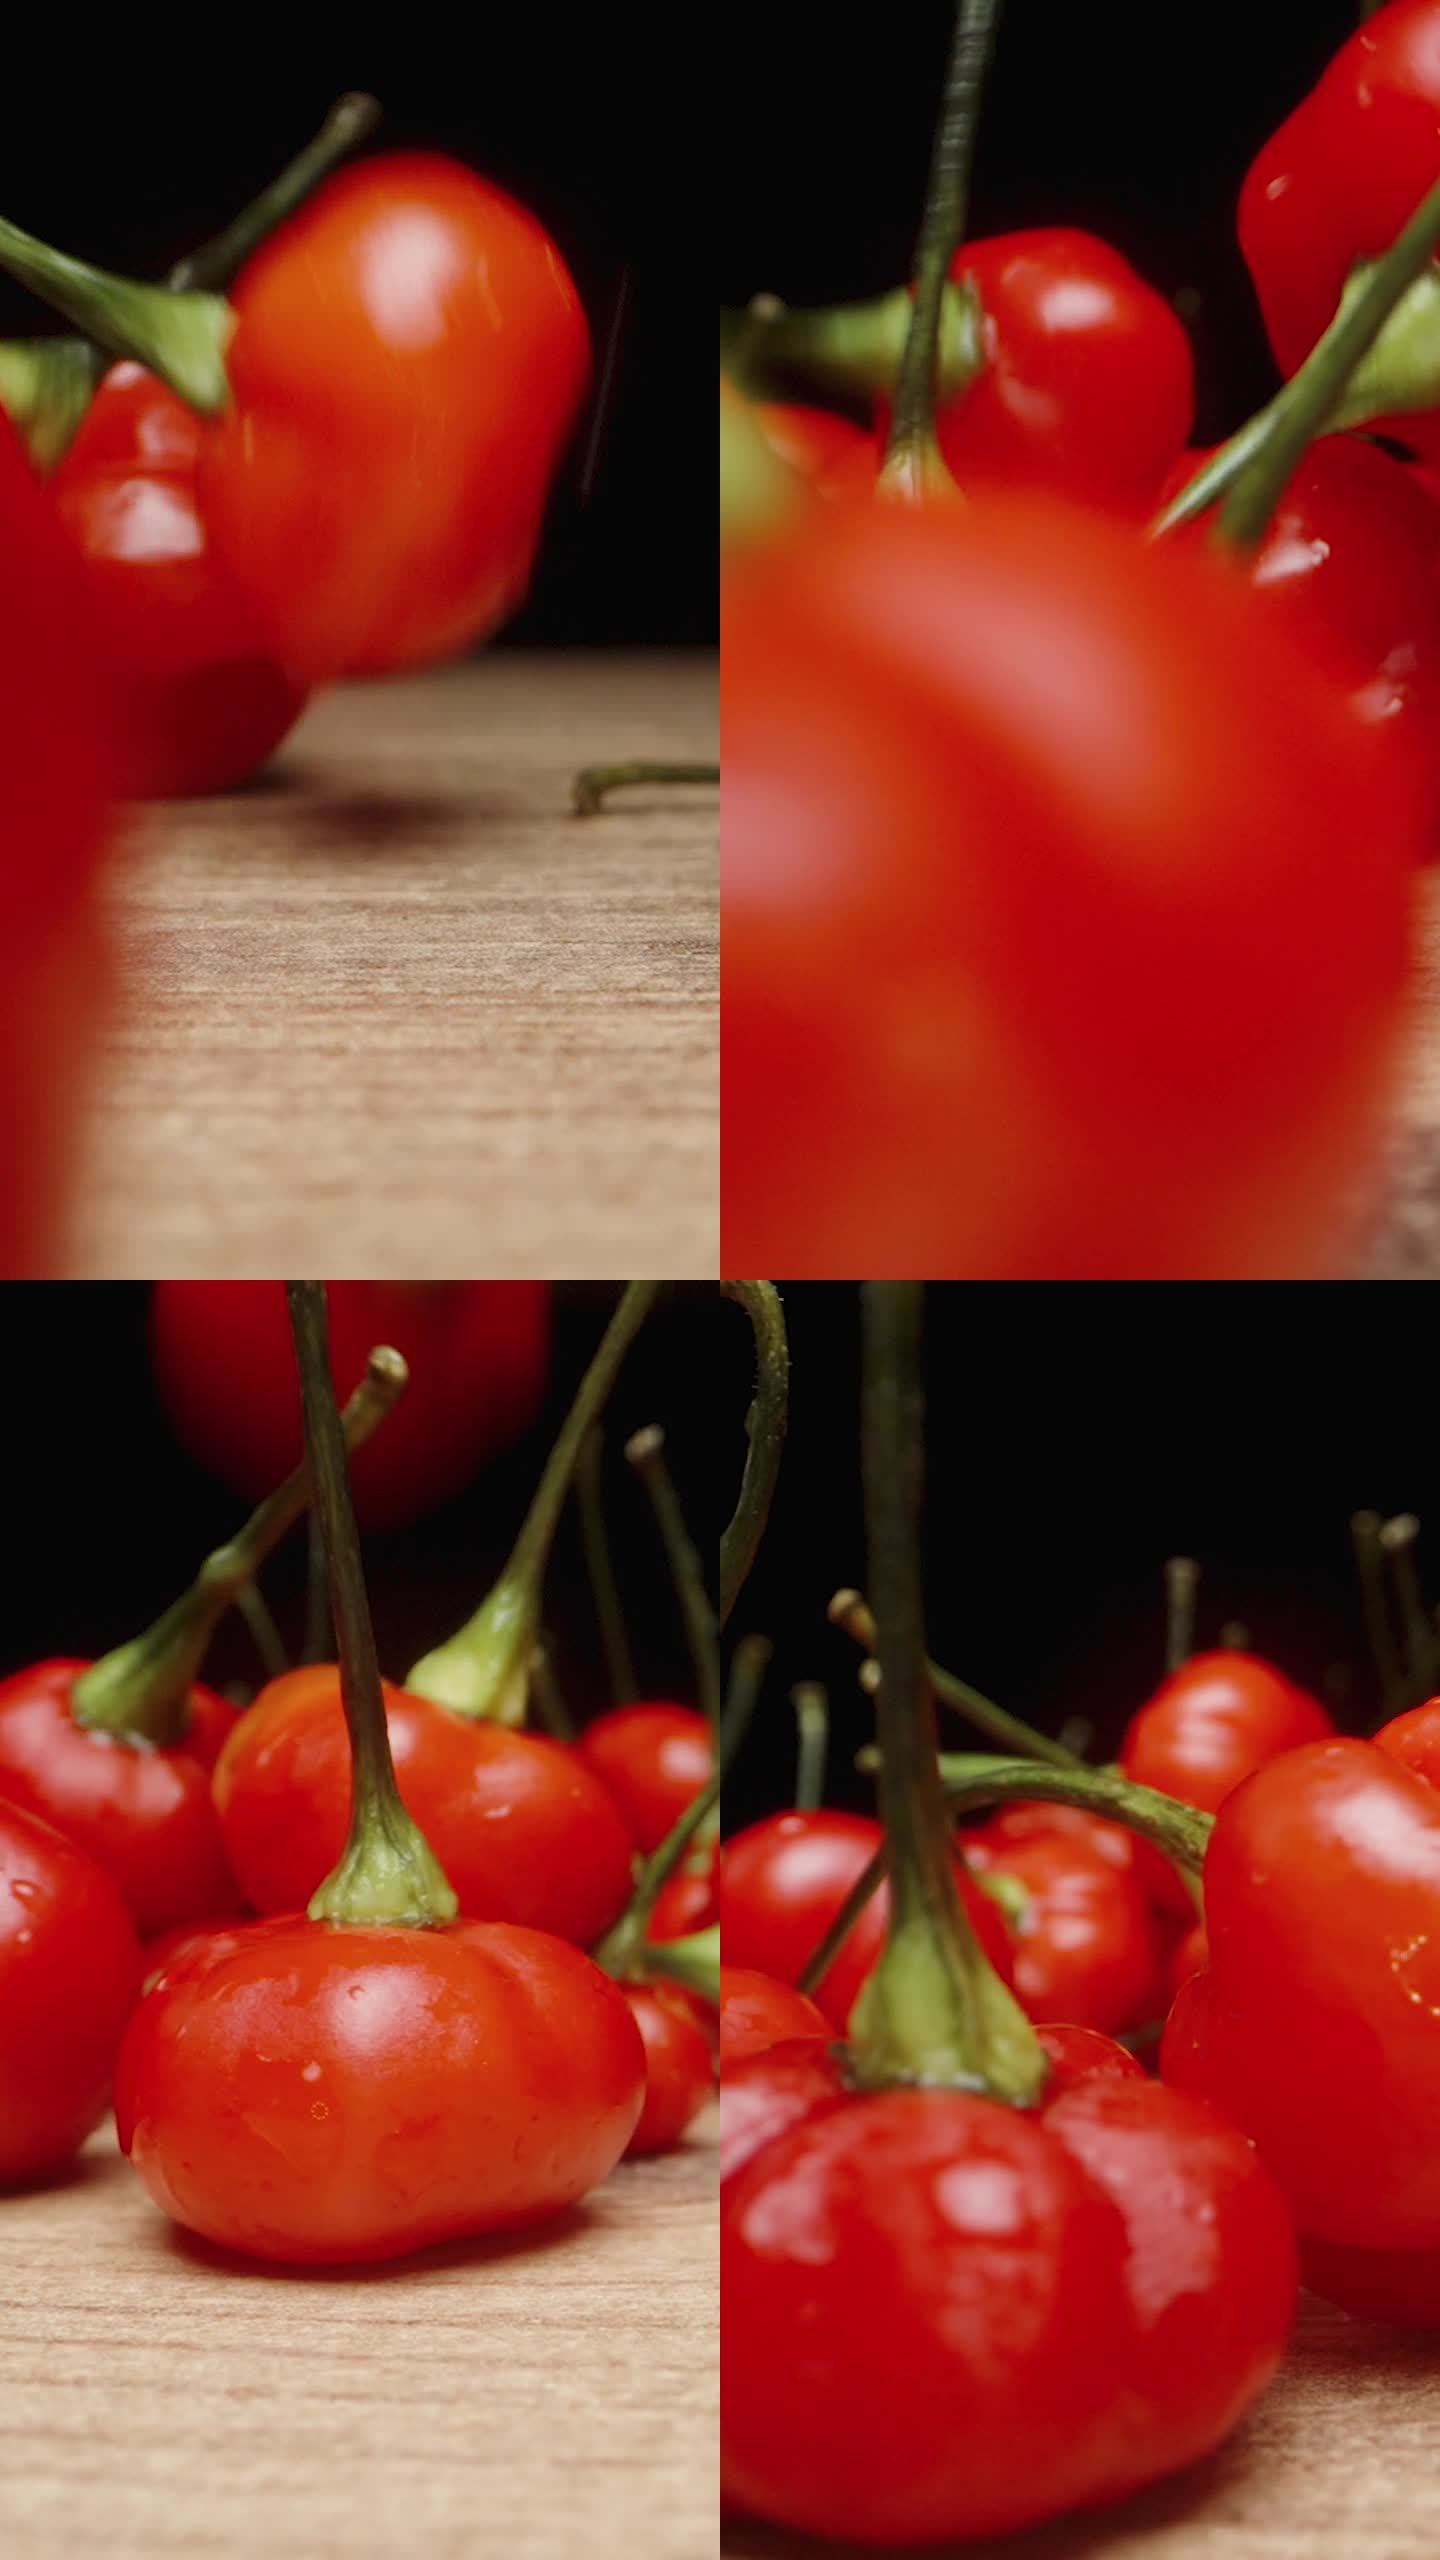 垂直视频。“火鸡之星”品种的微红辣椒以慢镜头落在桌子上。微距滑块拍摄。